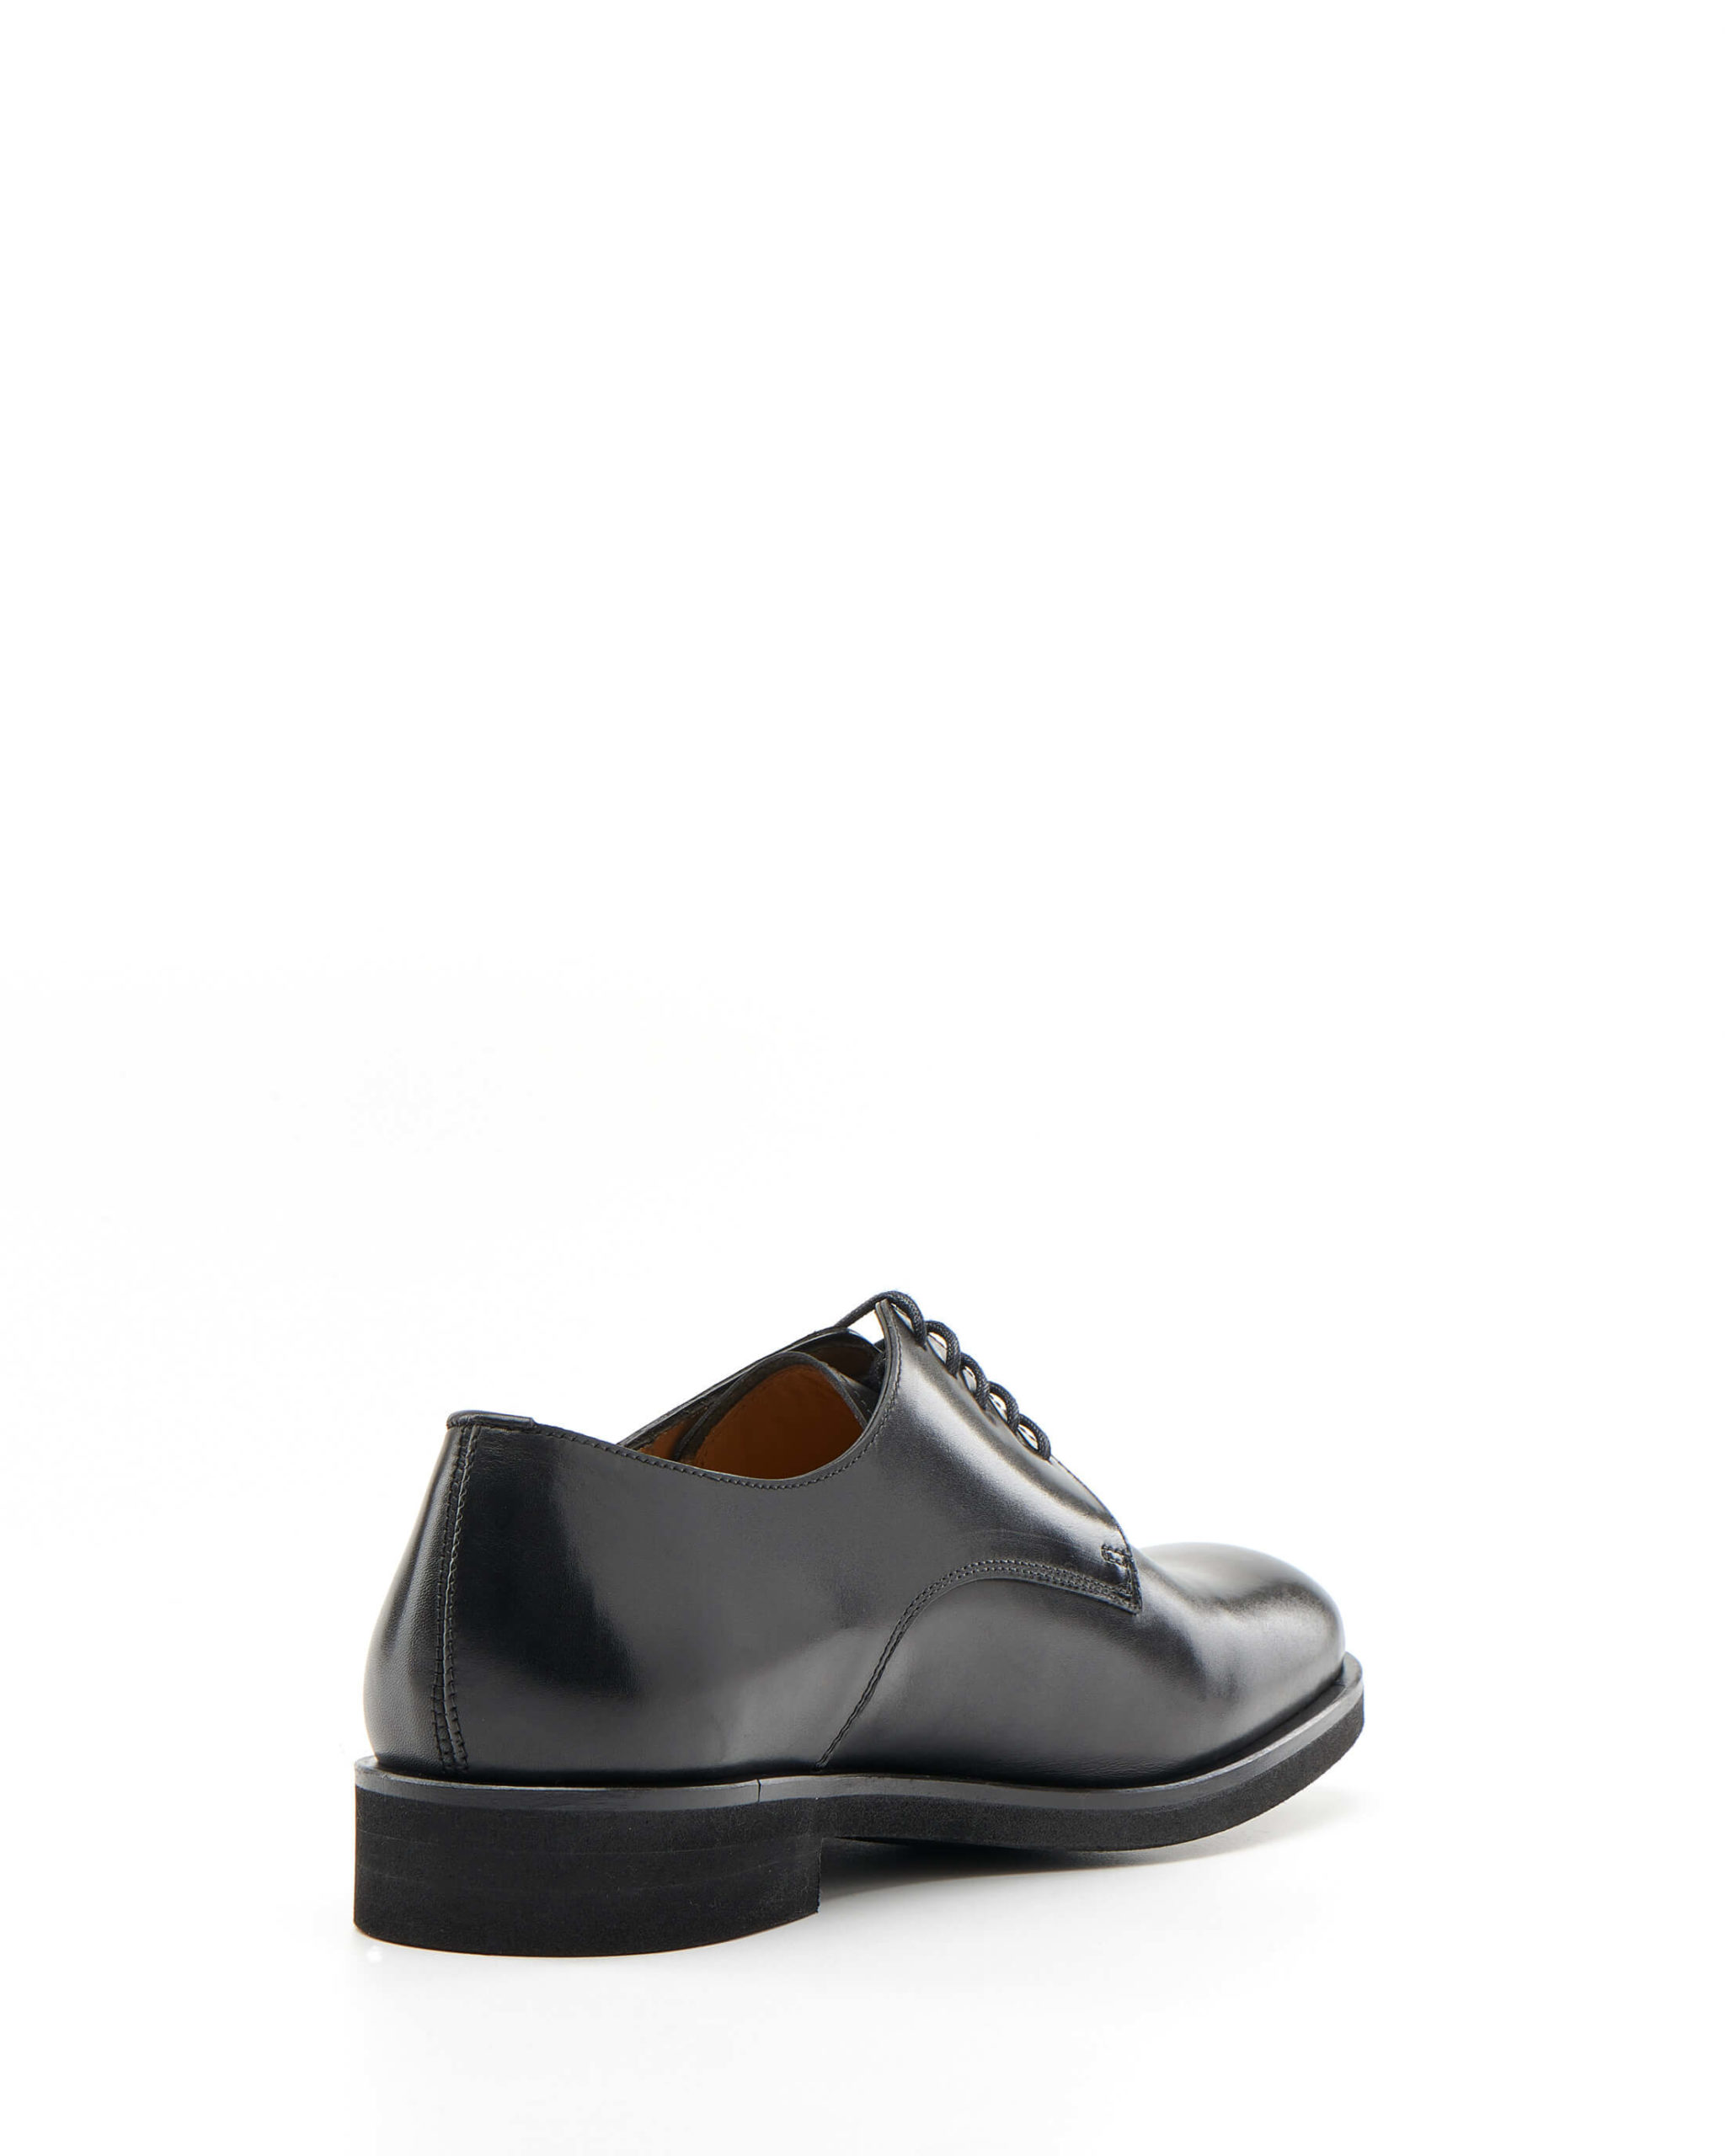 Luis Onofre Portuguese Shoes FW22 – HS0787_01 – Decaf Black-3